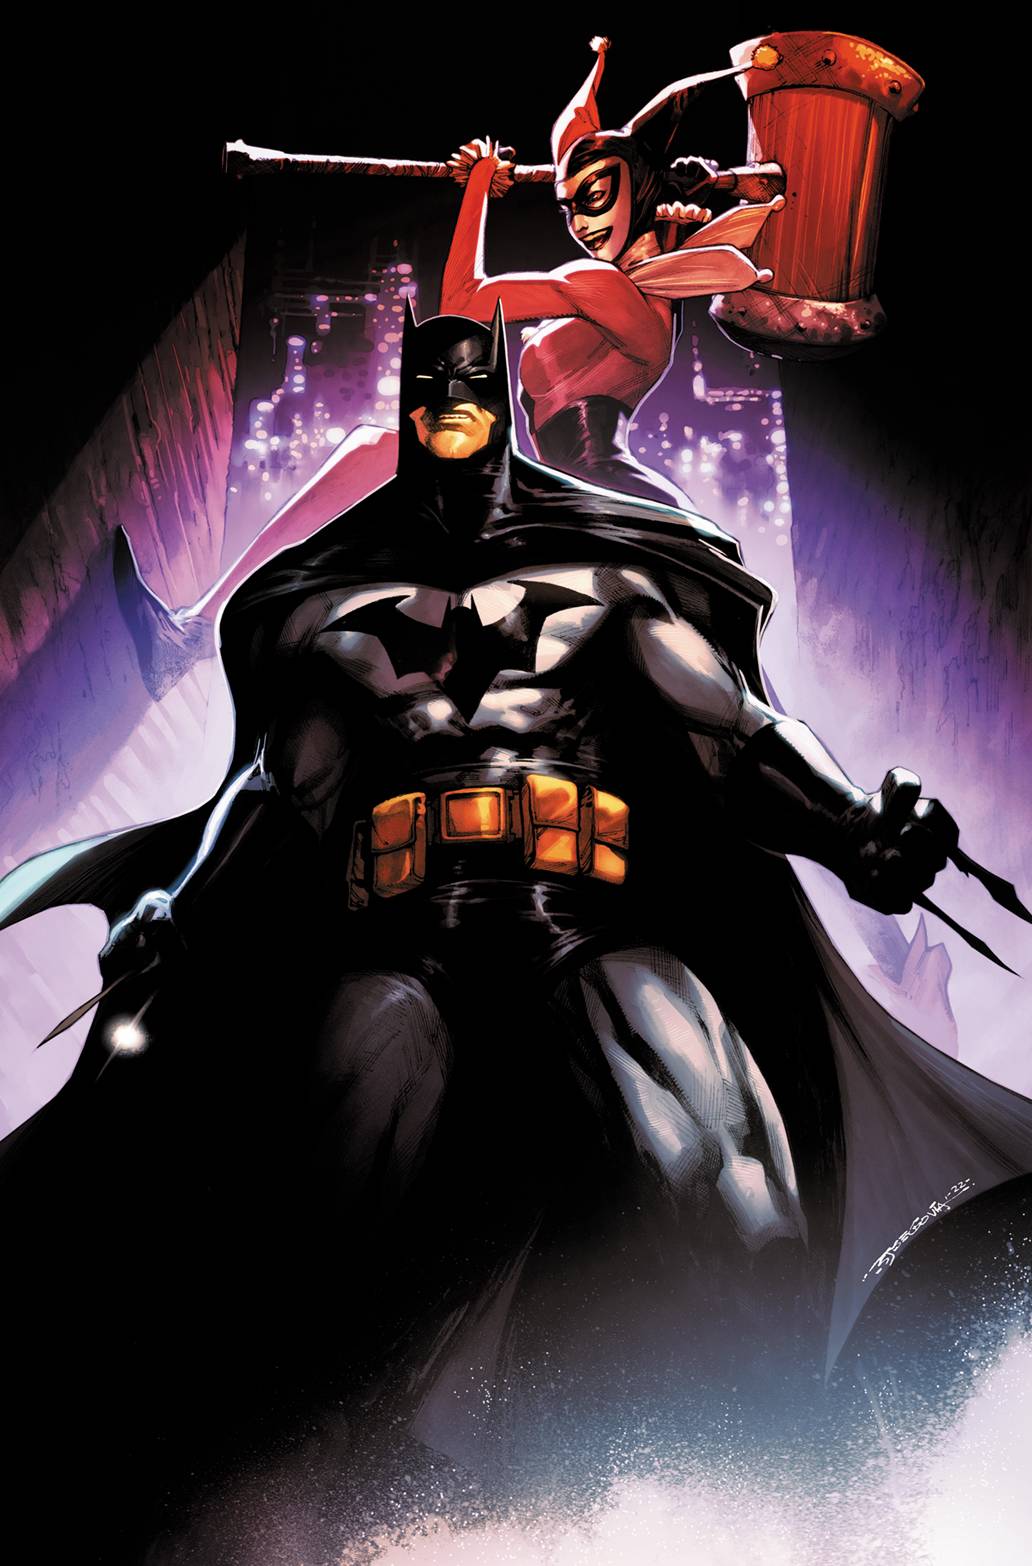 BATMAN #127 - The Comic Construct